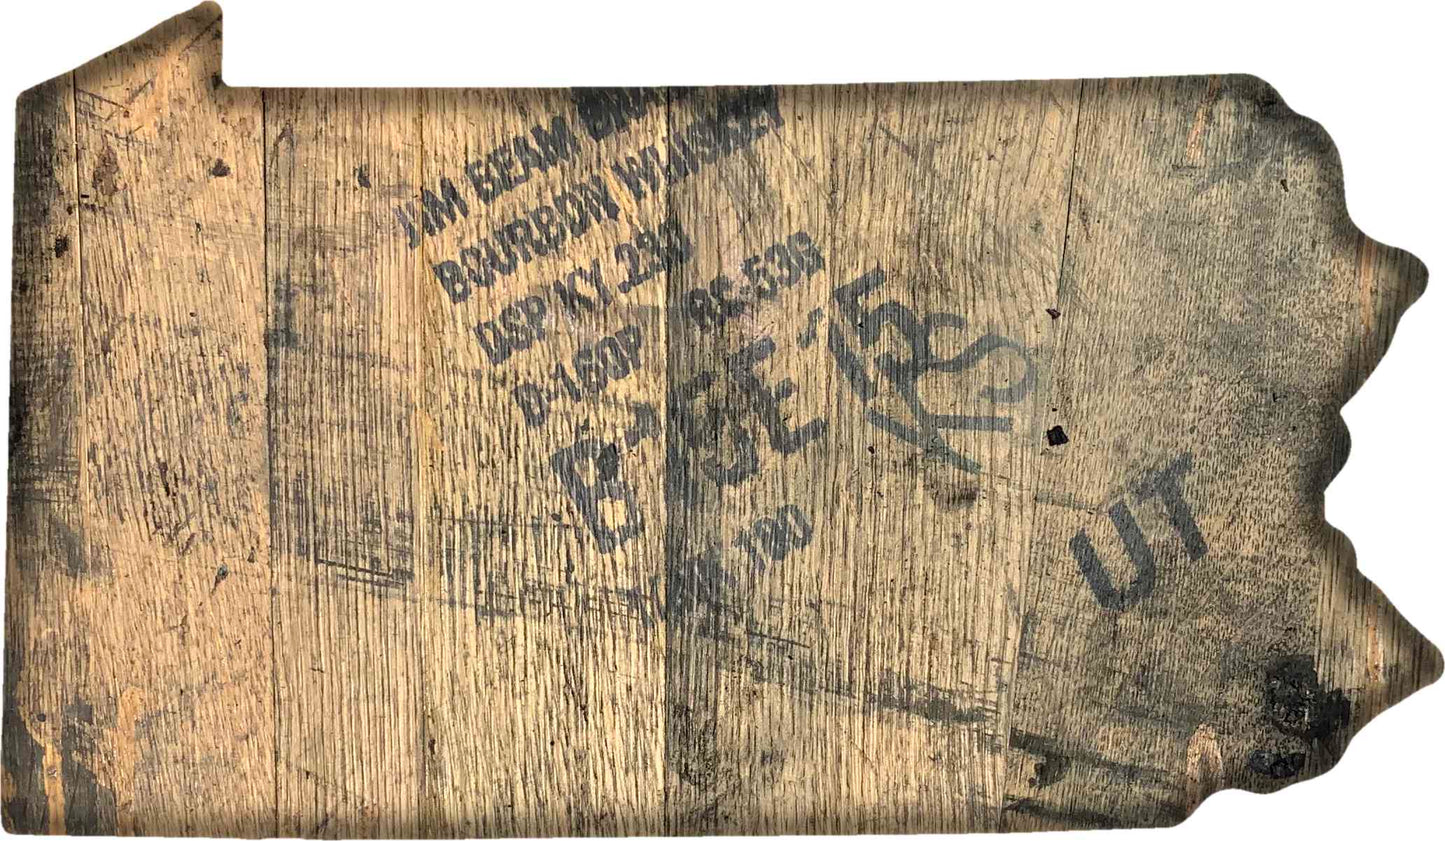 Bourbon Barrel State Wall Art - 18"